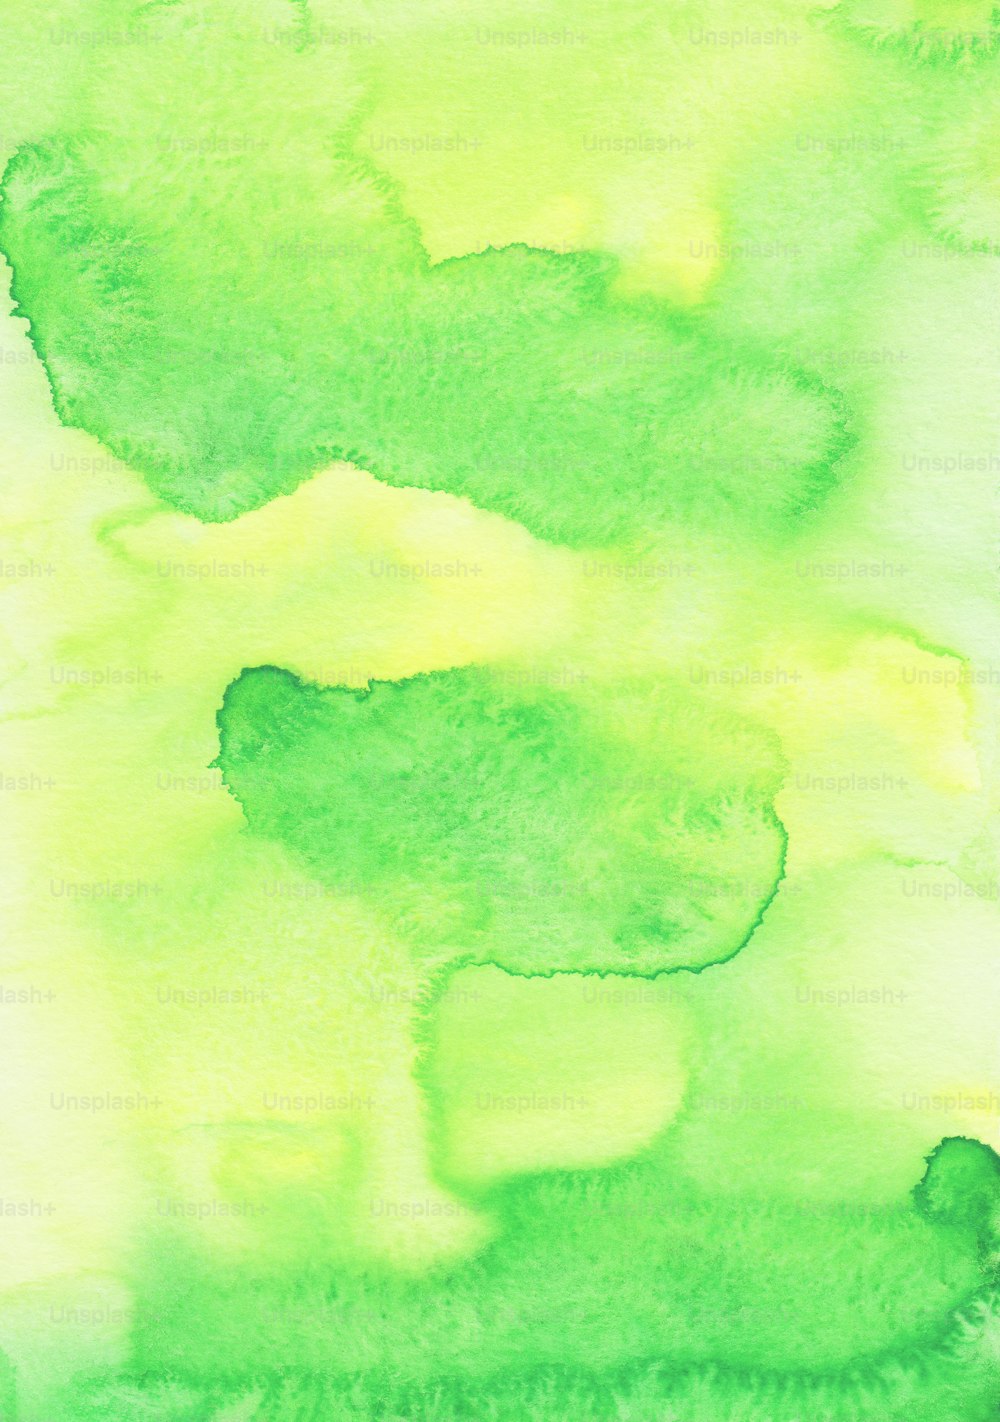 un dipinto di colori verdi e gialli su sfondo bianco